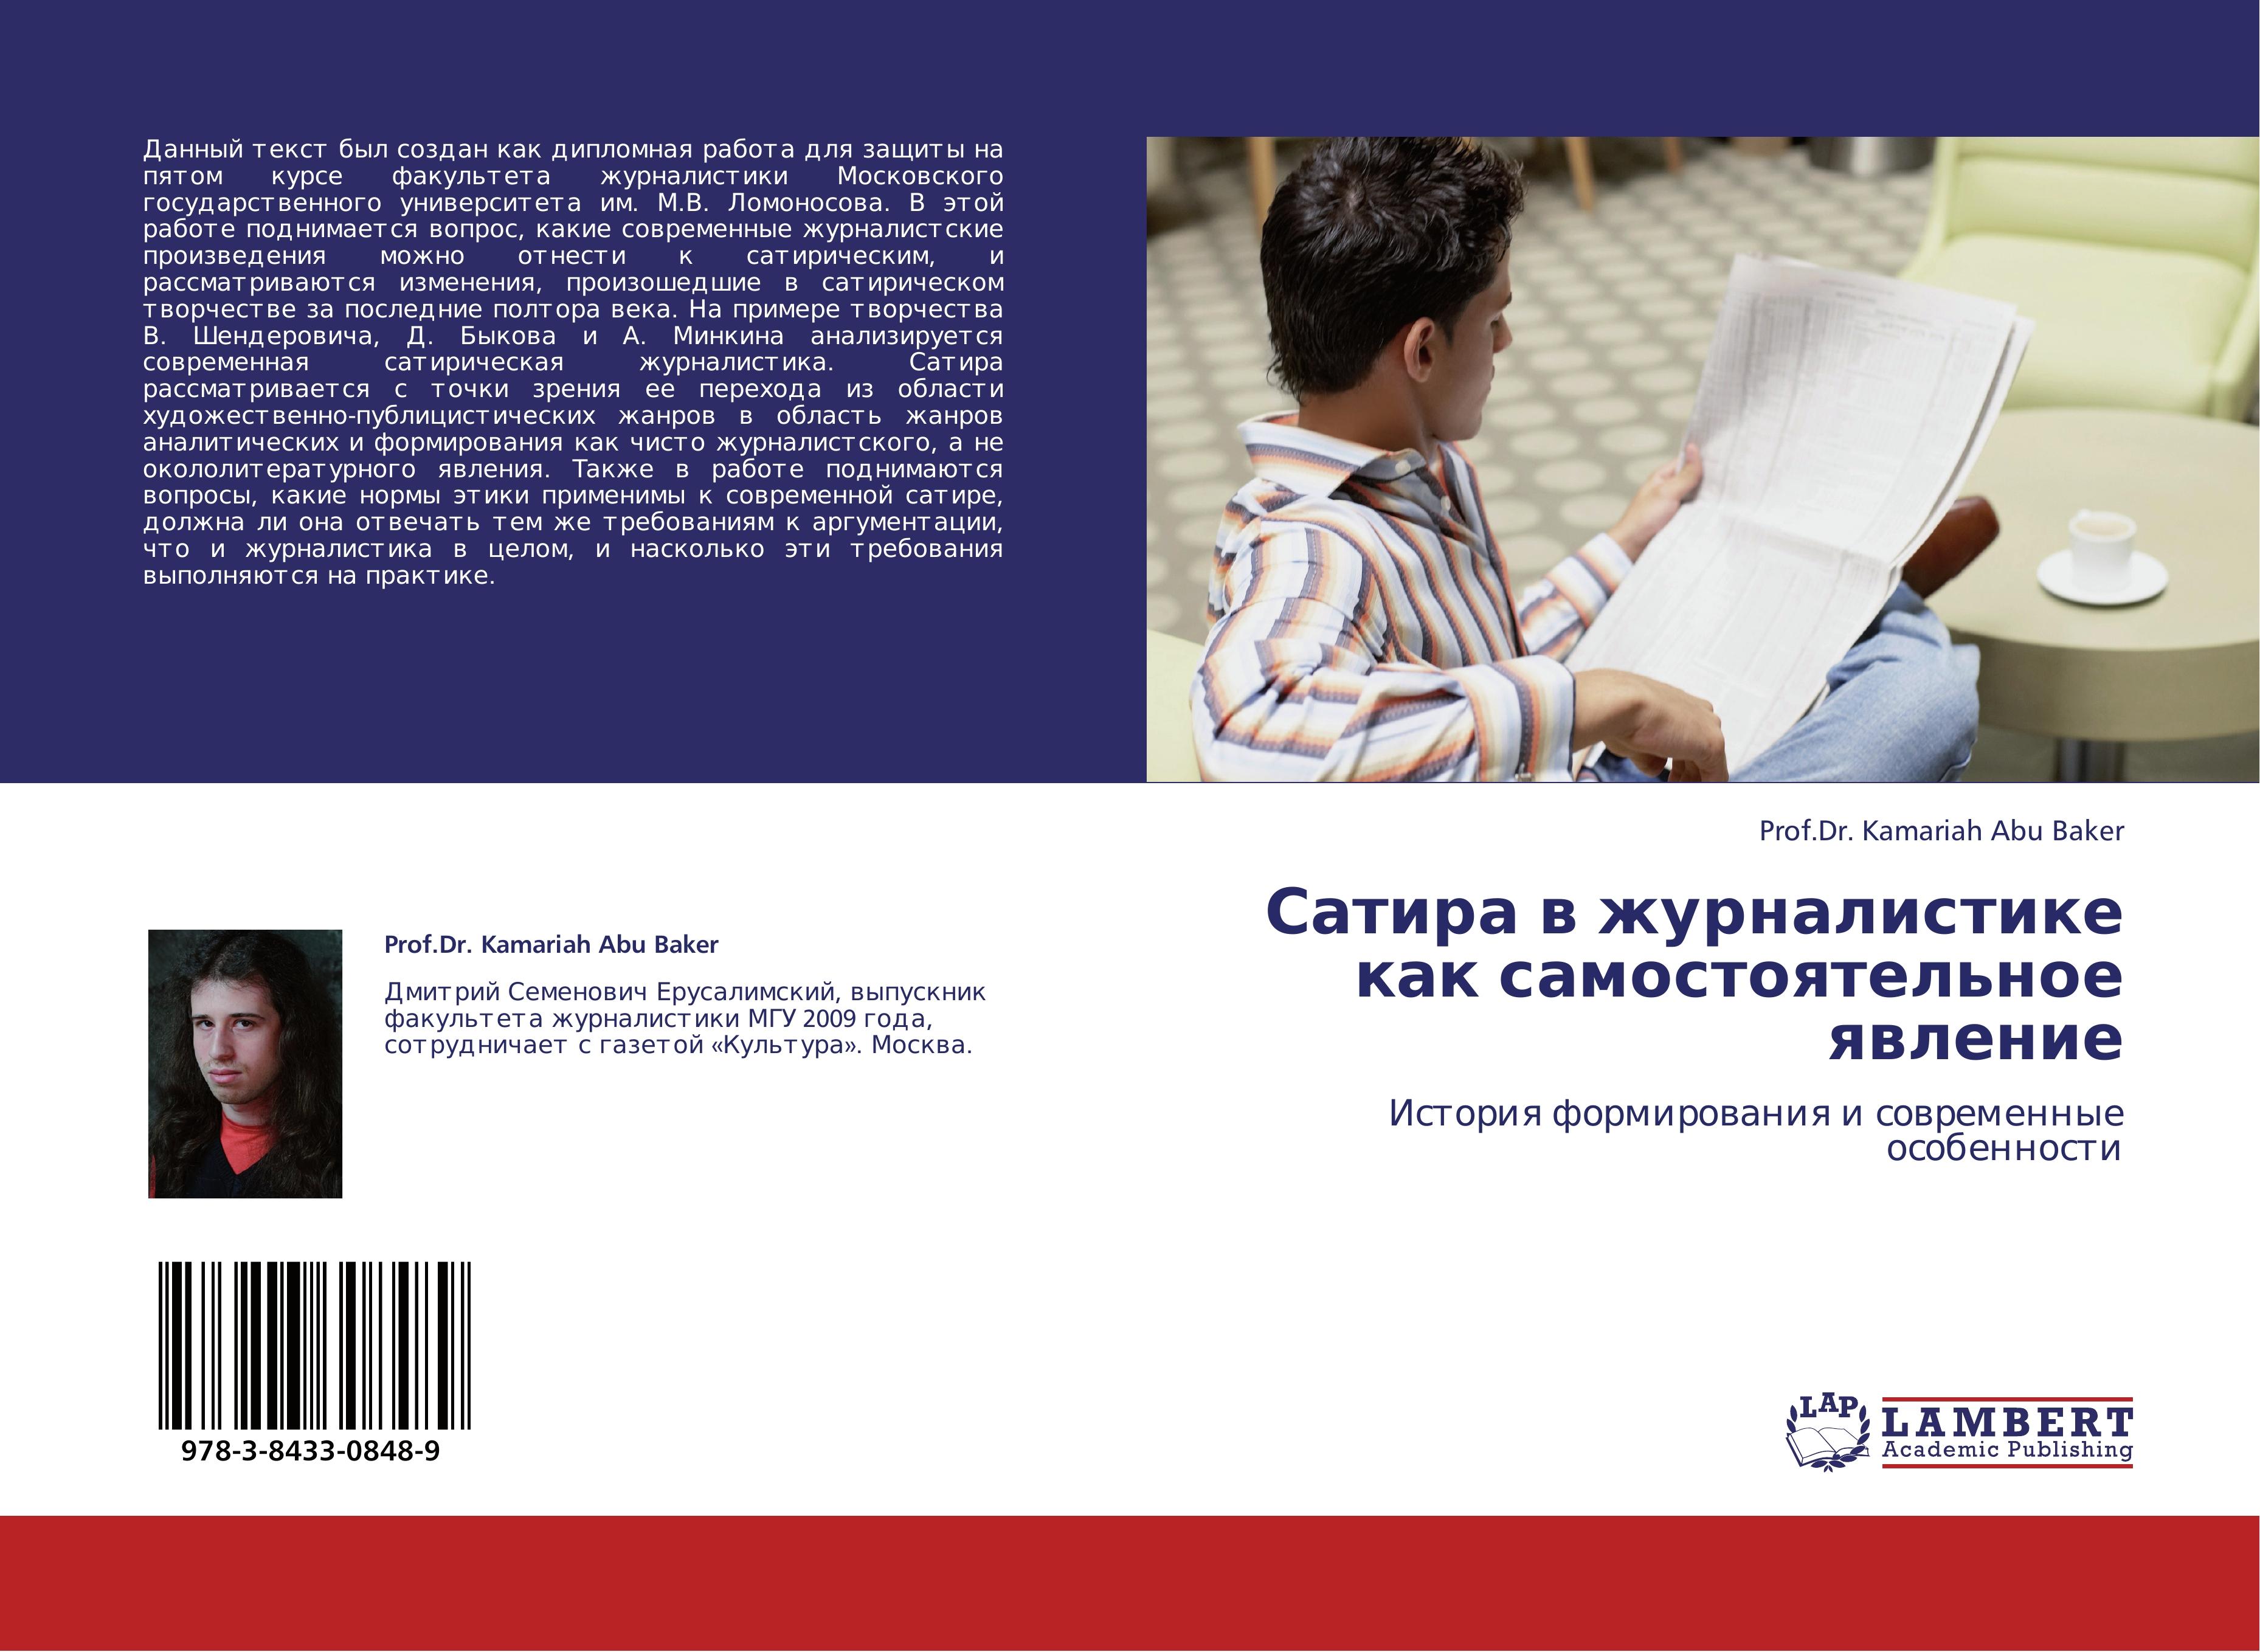 Satire im Journalismus als eigenstaendiges Phaenomen, russische Ausgabe - Prof.Dr. Kamariah Abu Baker